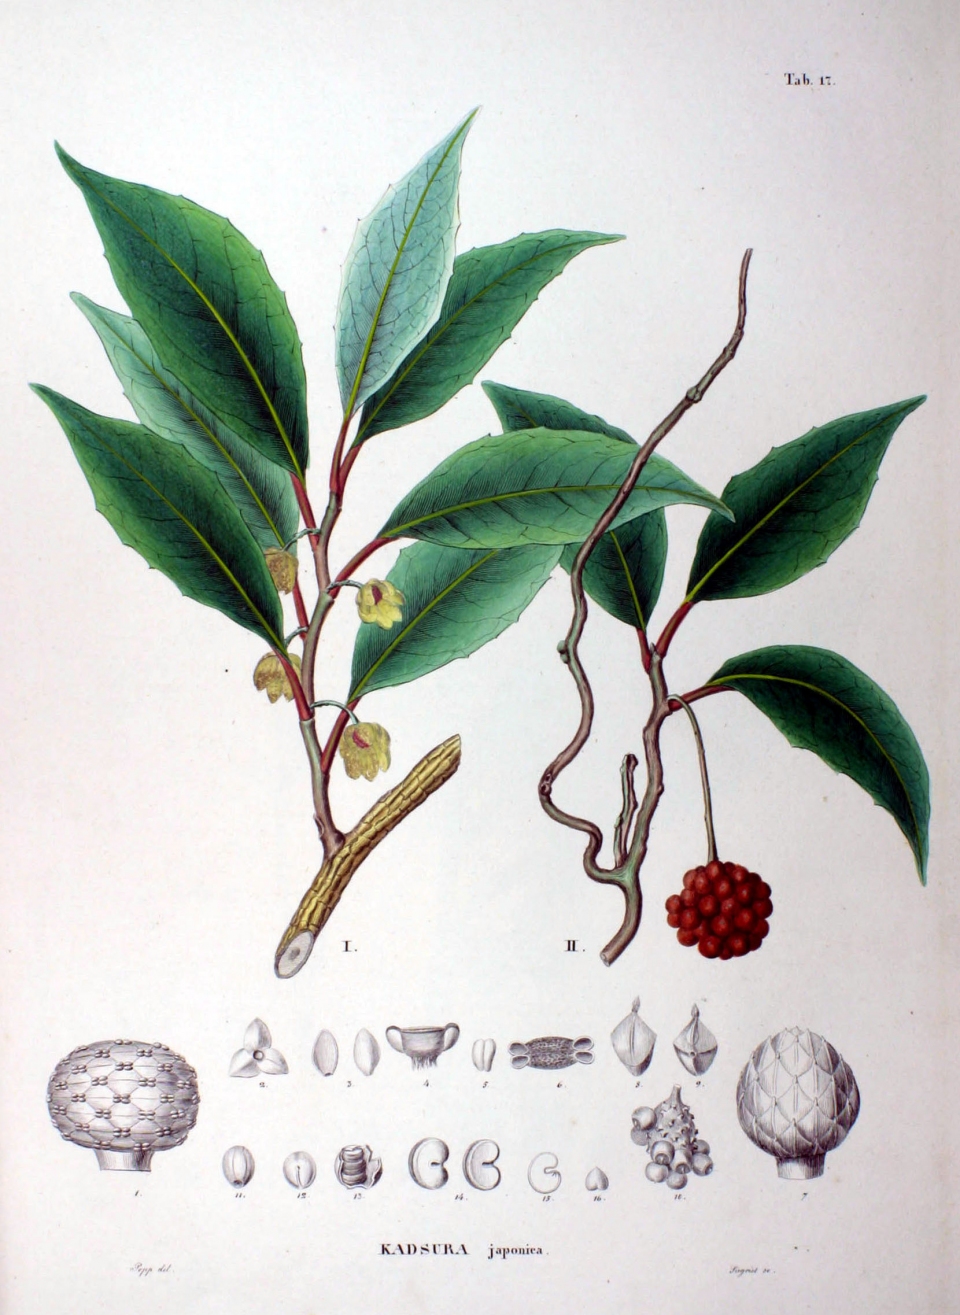 Kadsura japonica